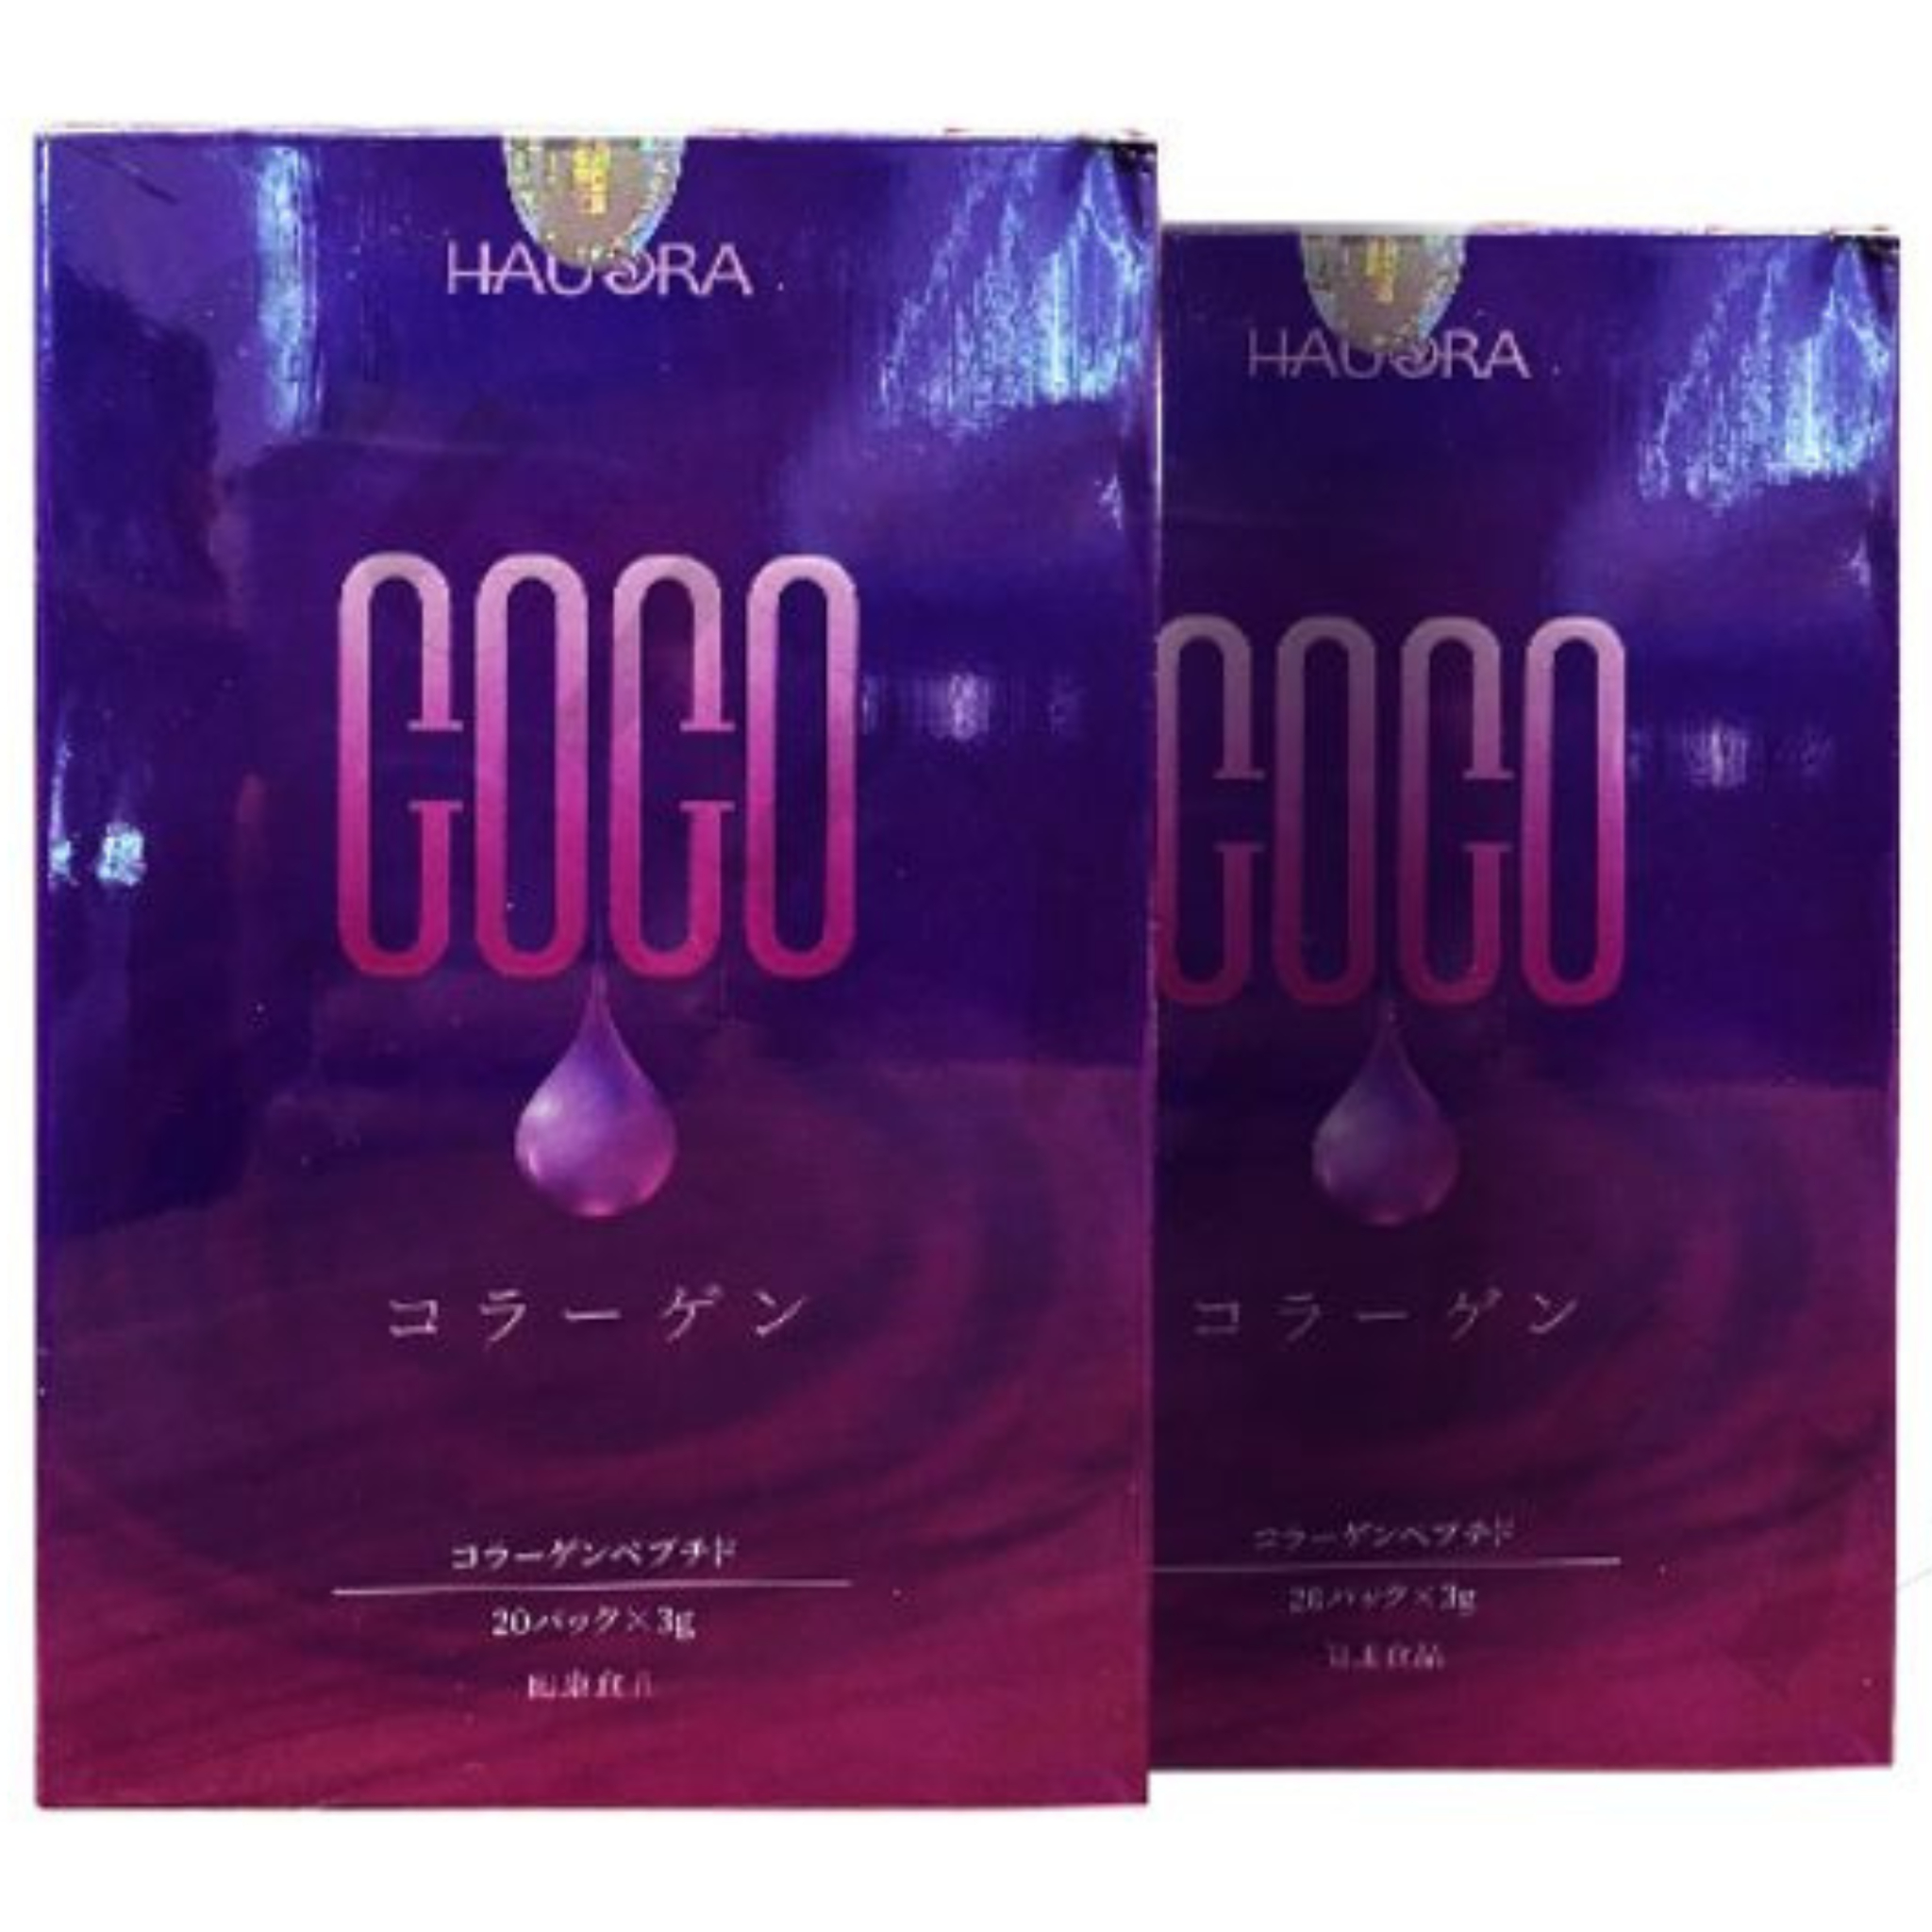 Coco collagen - màu sắc chủ đạo của bao bì là hồng tím galaxy rất bắt mắt và thu hút